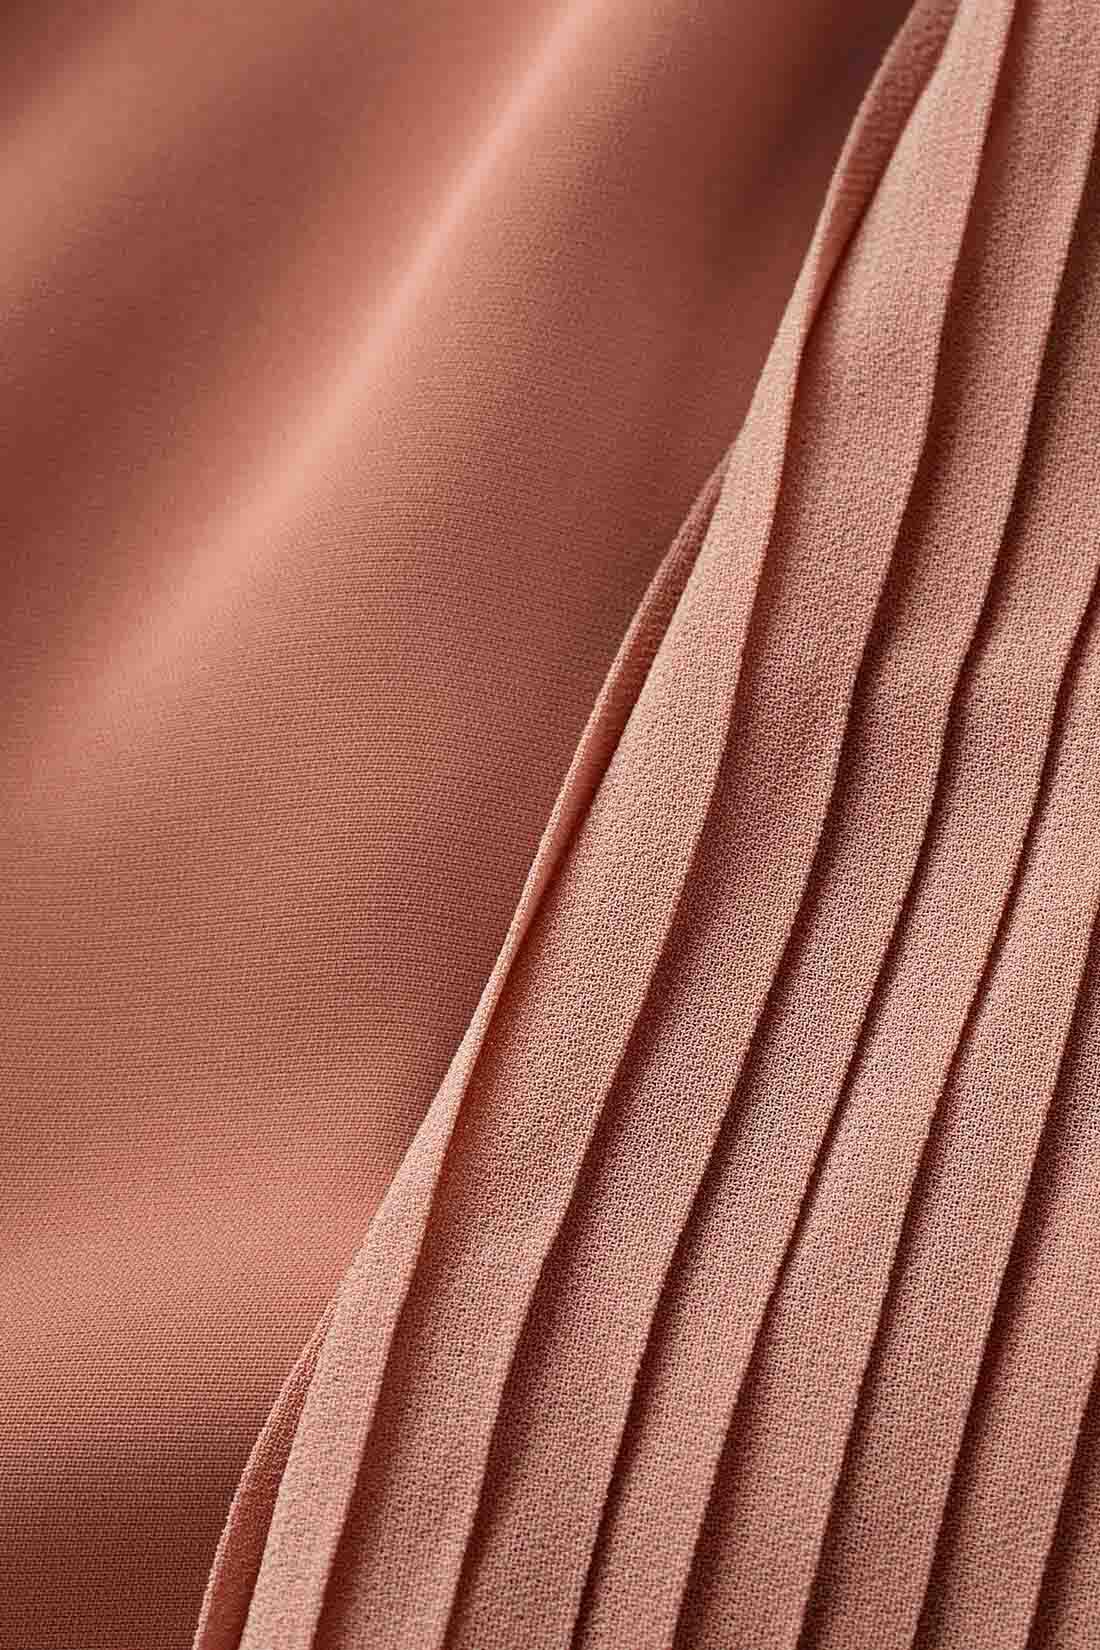 IEDIT|IEDIT[イディット]　袖プリーツが繊細なボウタイデザインブラウス〈テラコッタピンク〉|マットなポリエステル素材とシフォンプリーツの軽やかな薄手素材の組み合わせ。 ※お届けするカラーとは異なります。